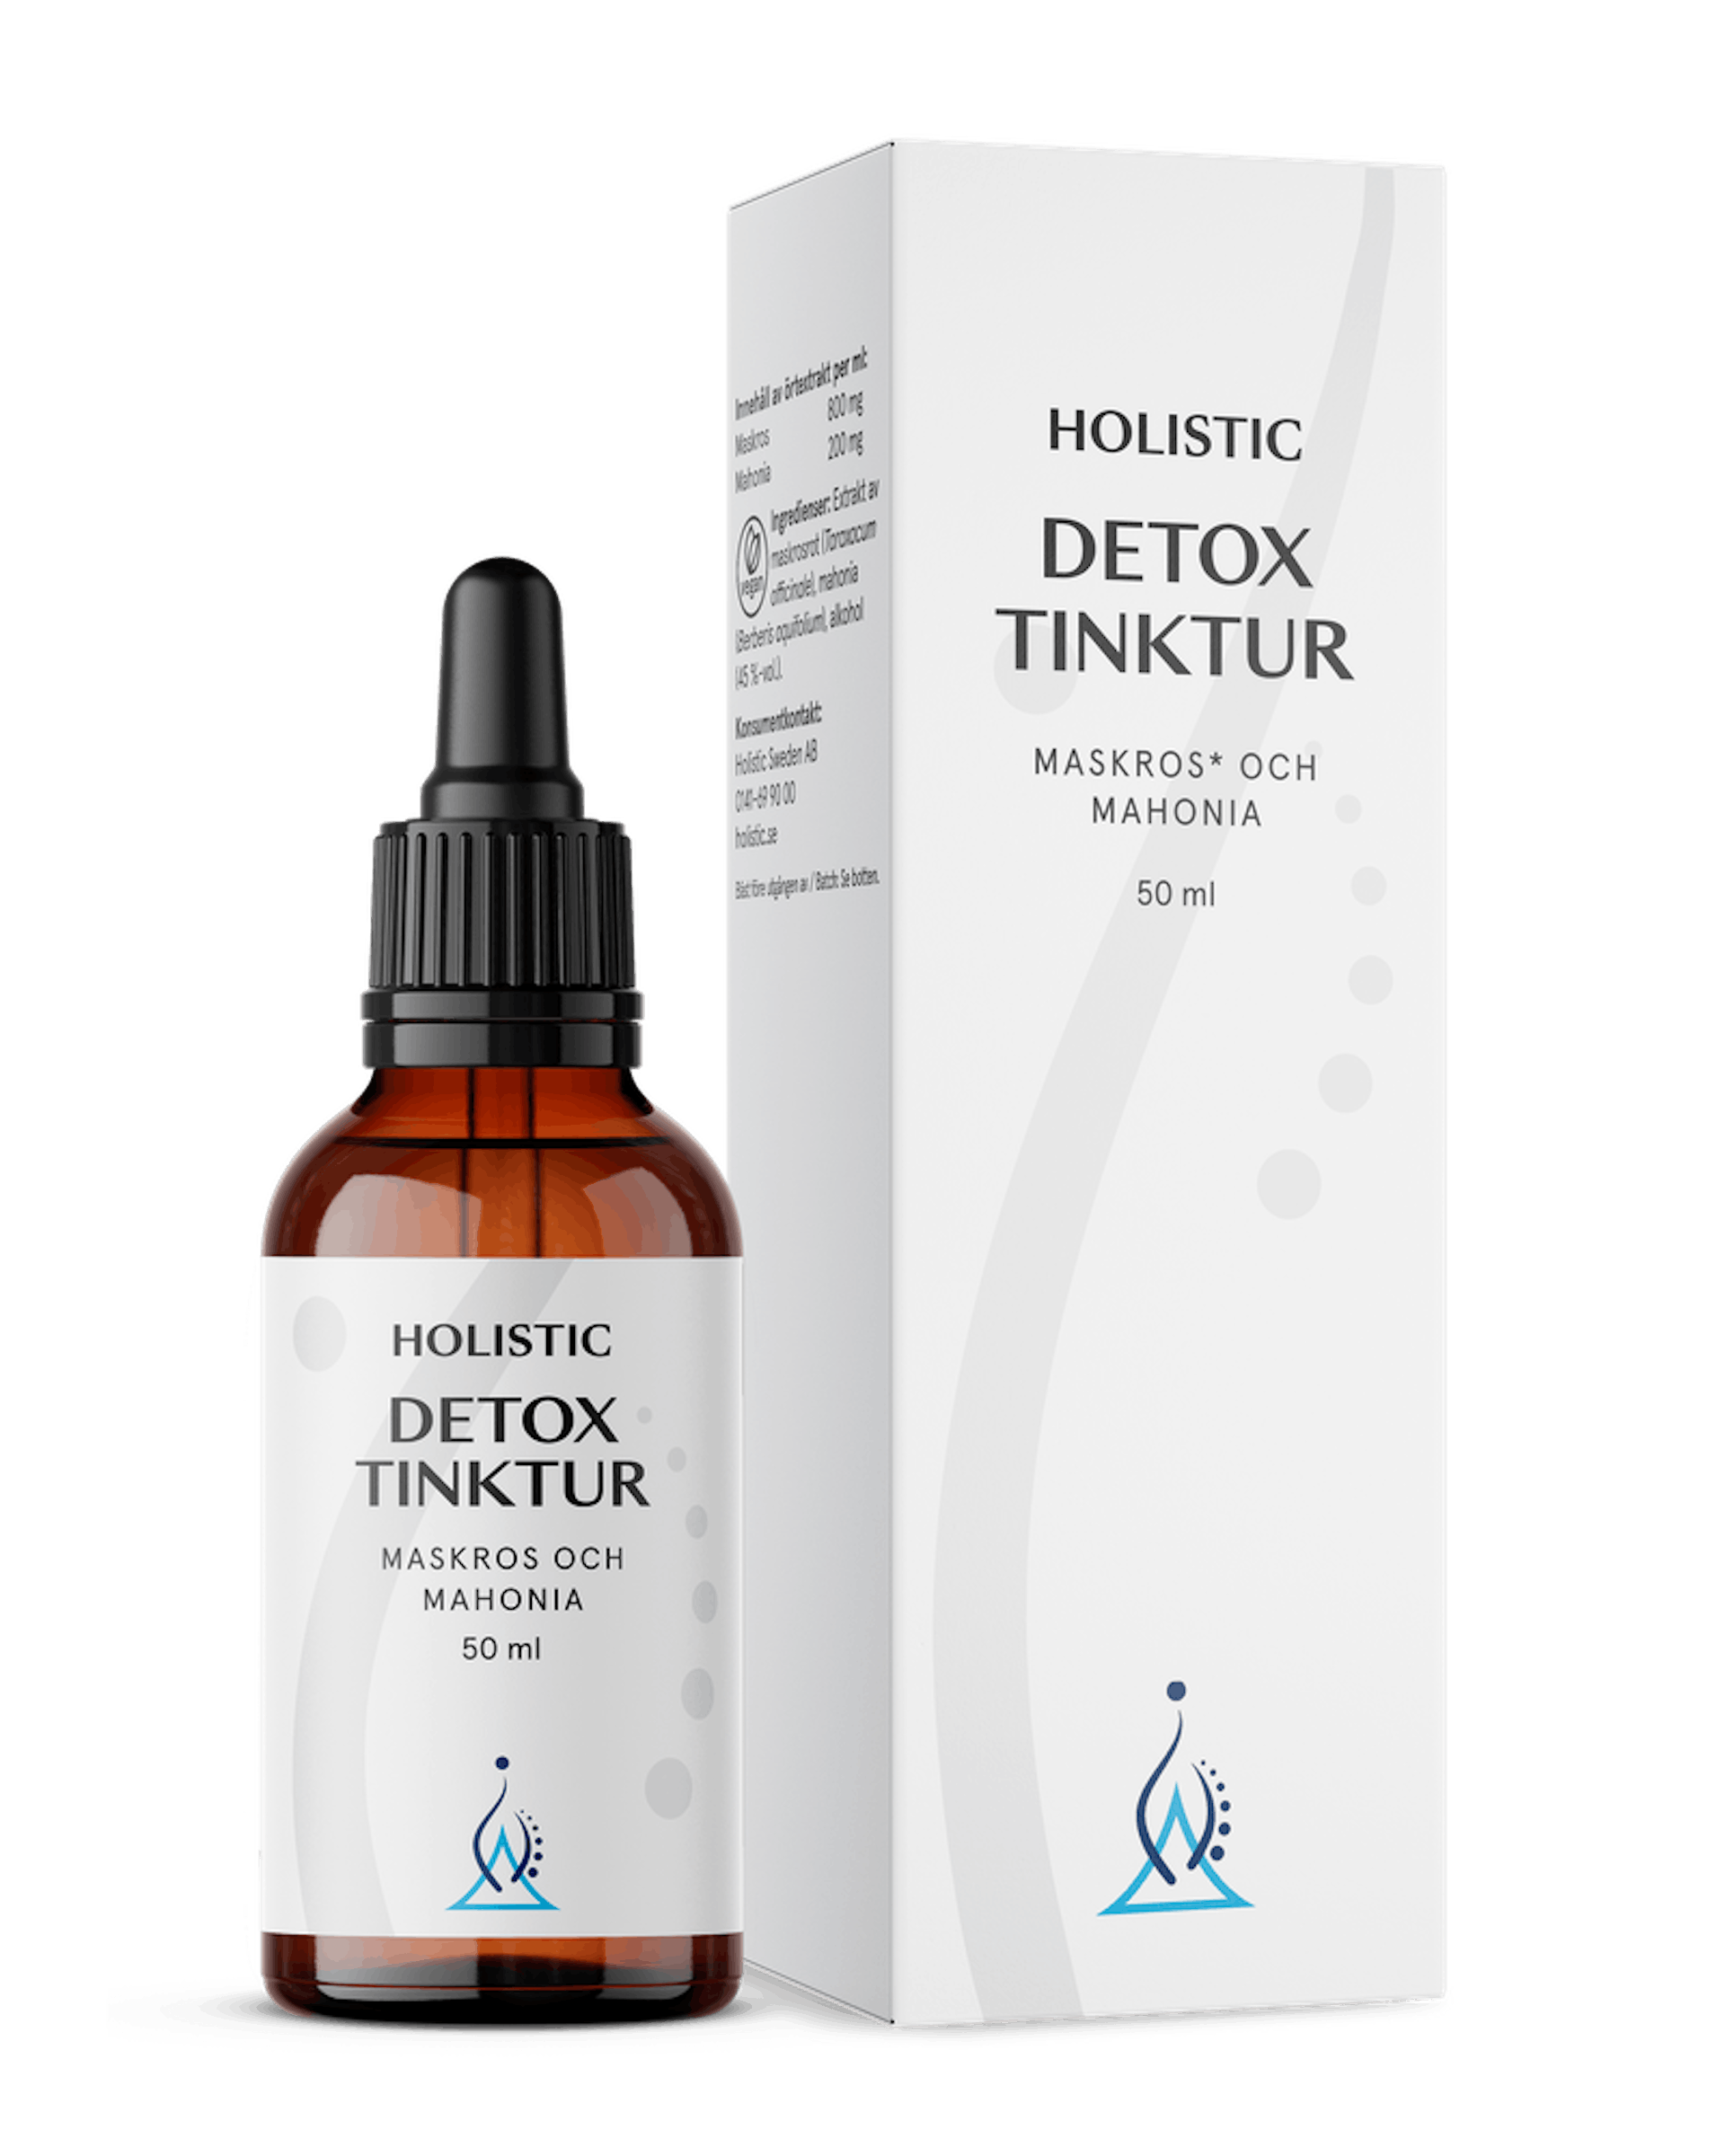 Detox tinktur, 50 ml